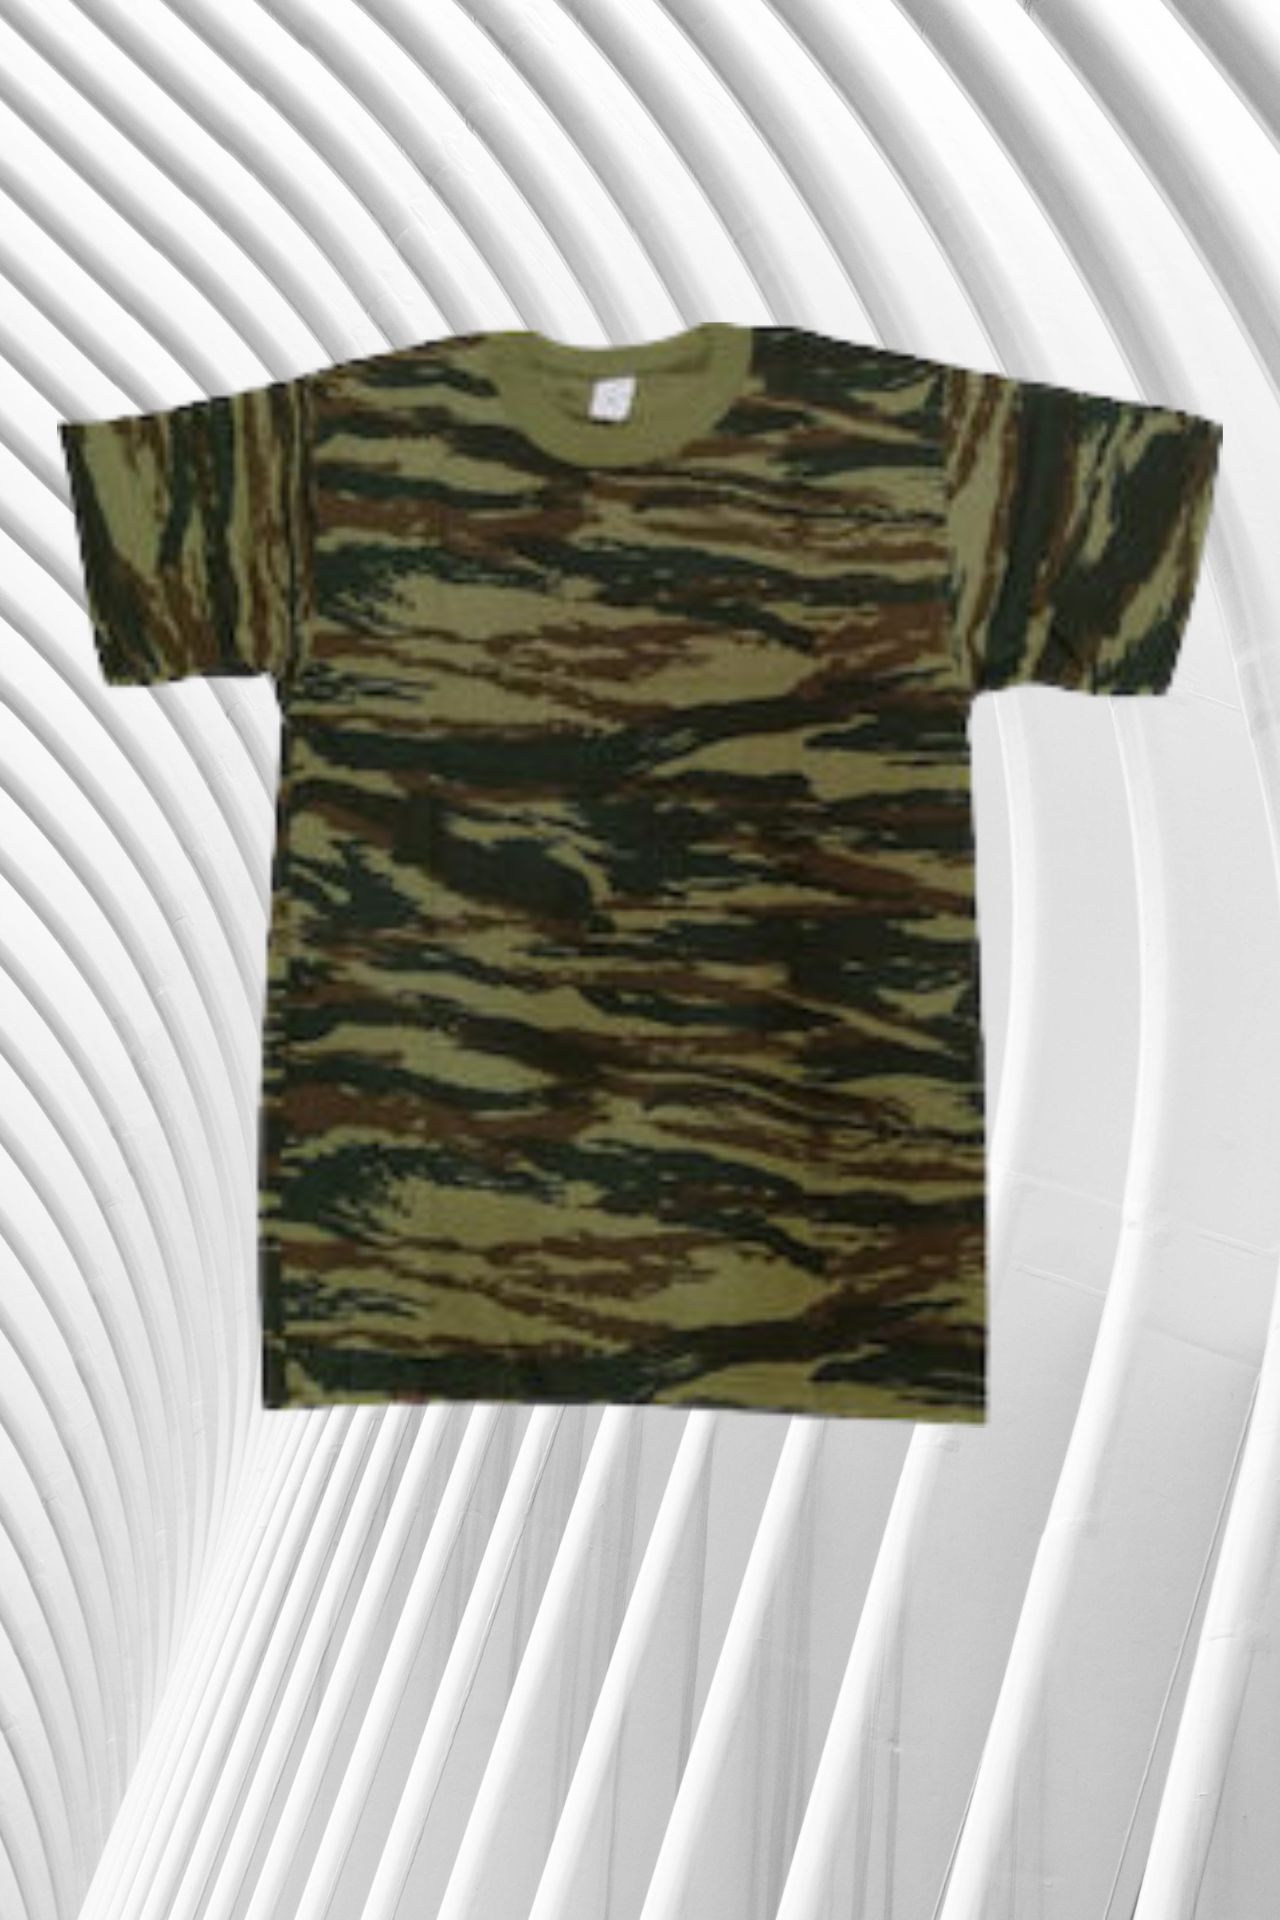 kontomaniko-t-shirt-parallagis-0304 (3)